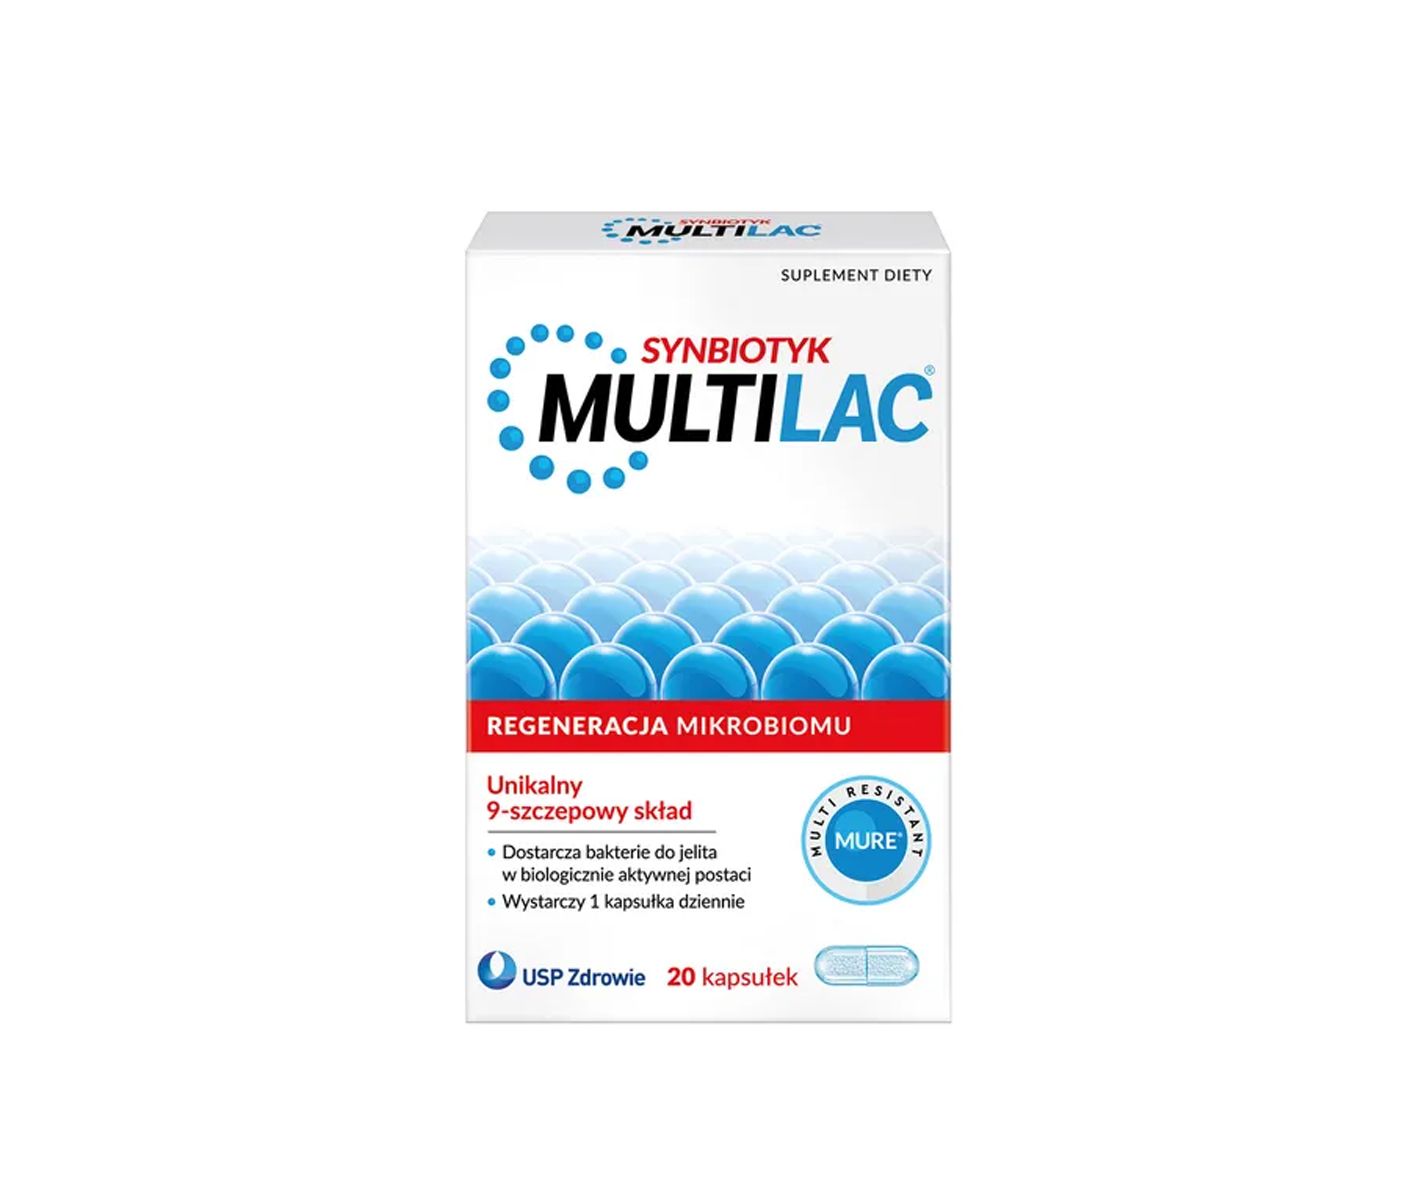 Multilac, synbiotic capsules